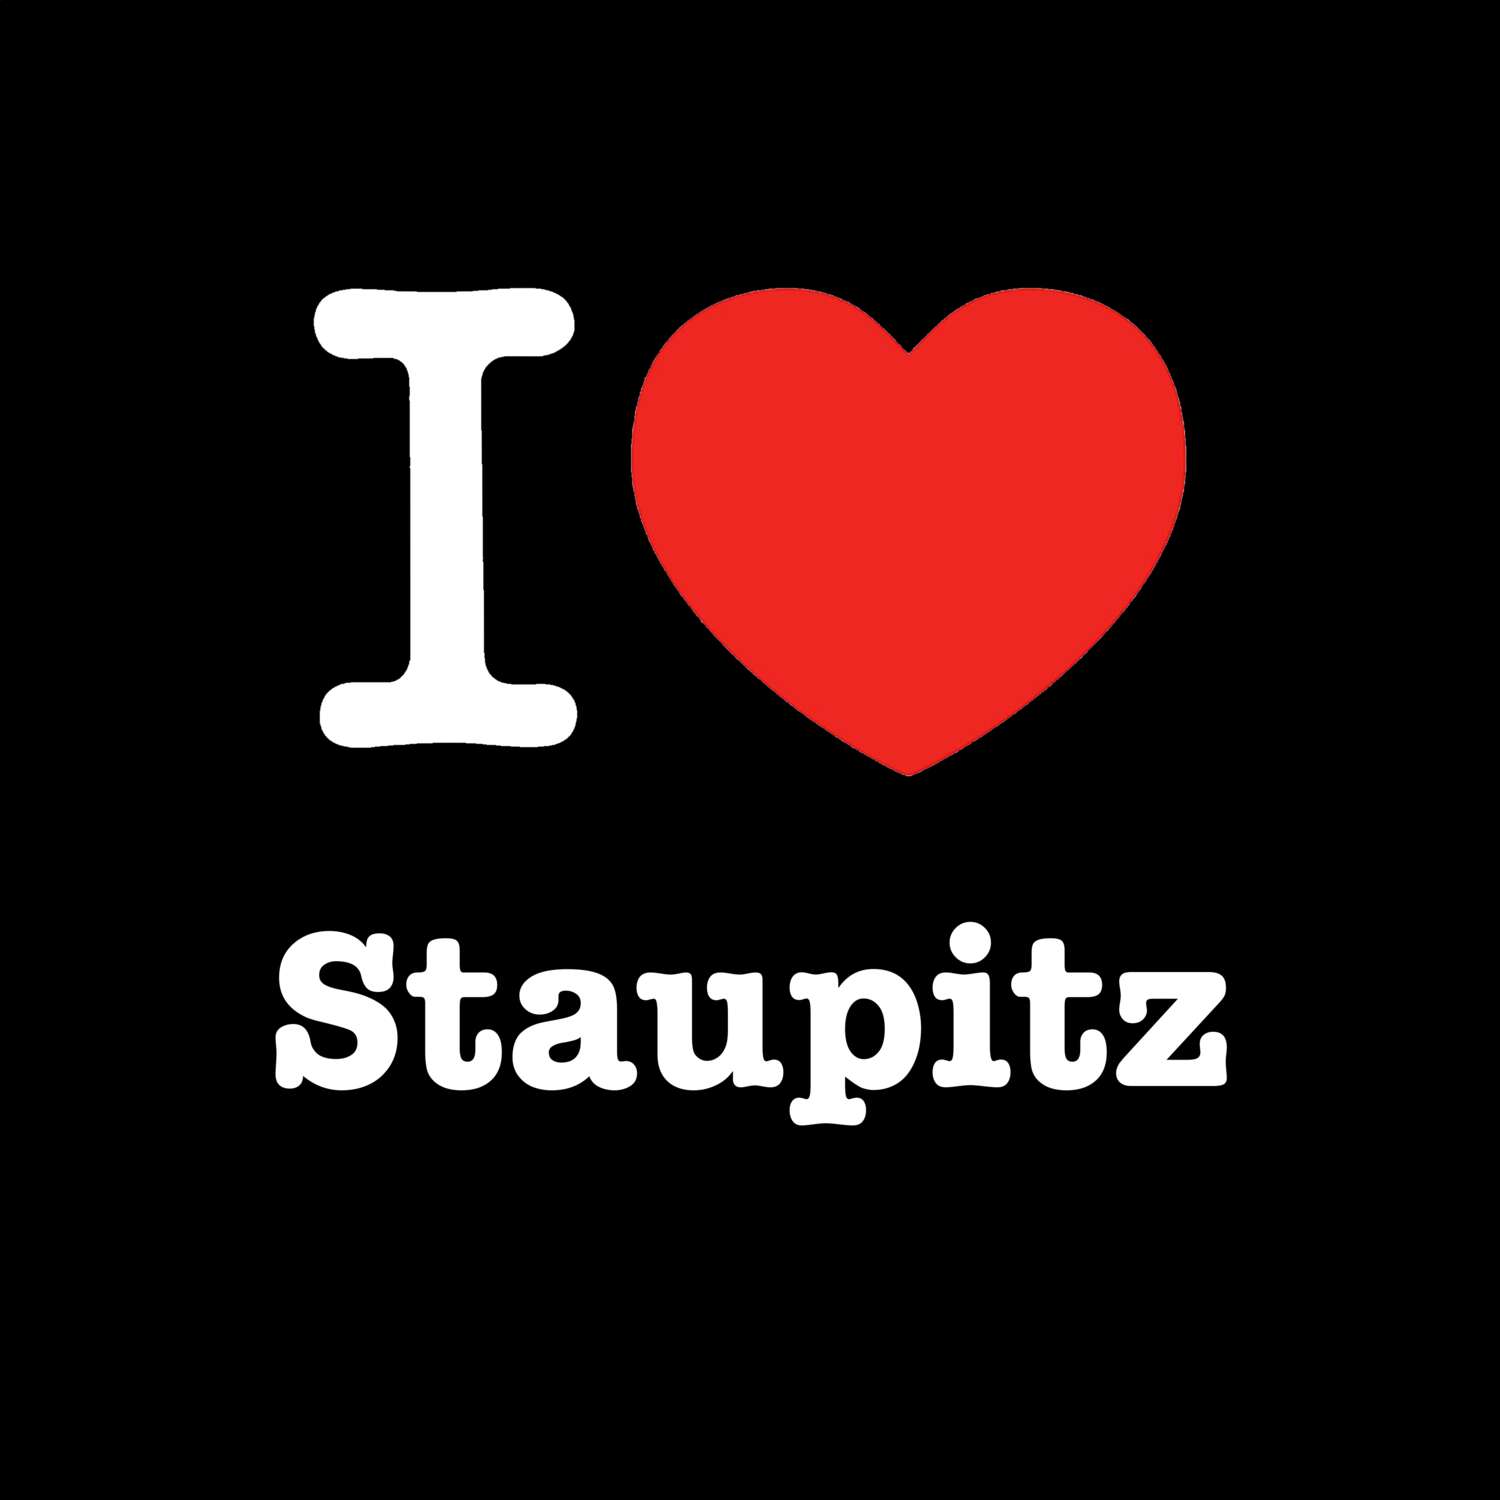 Staupitz T-Shirt »I love«